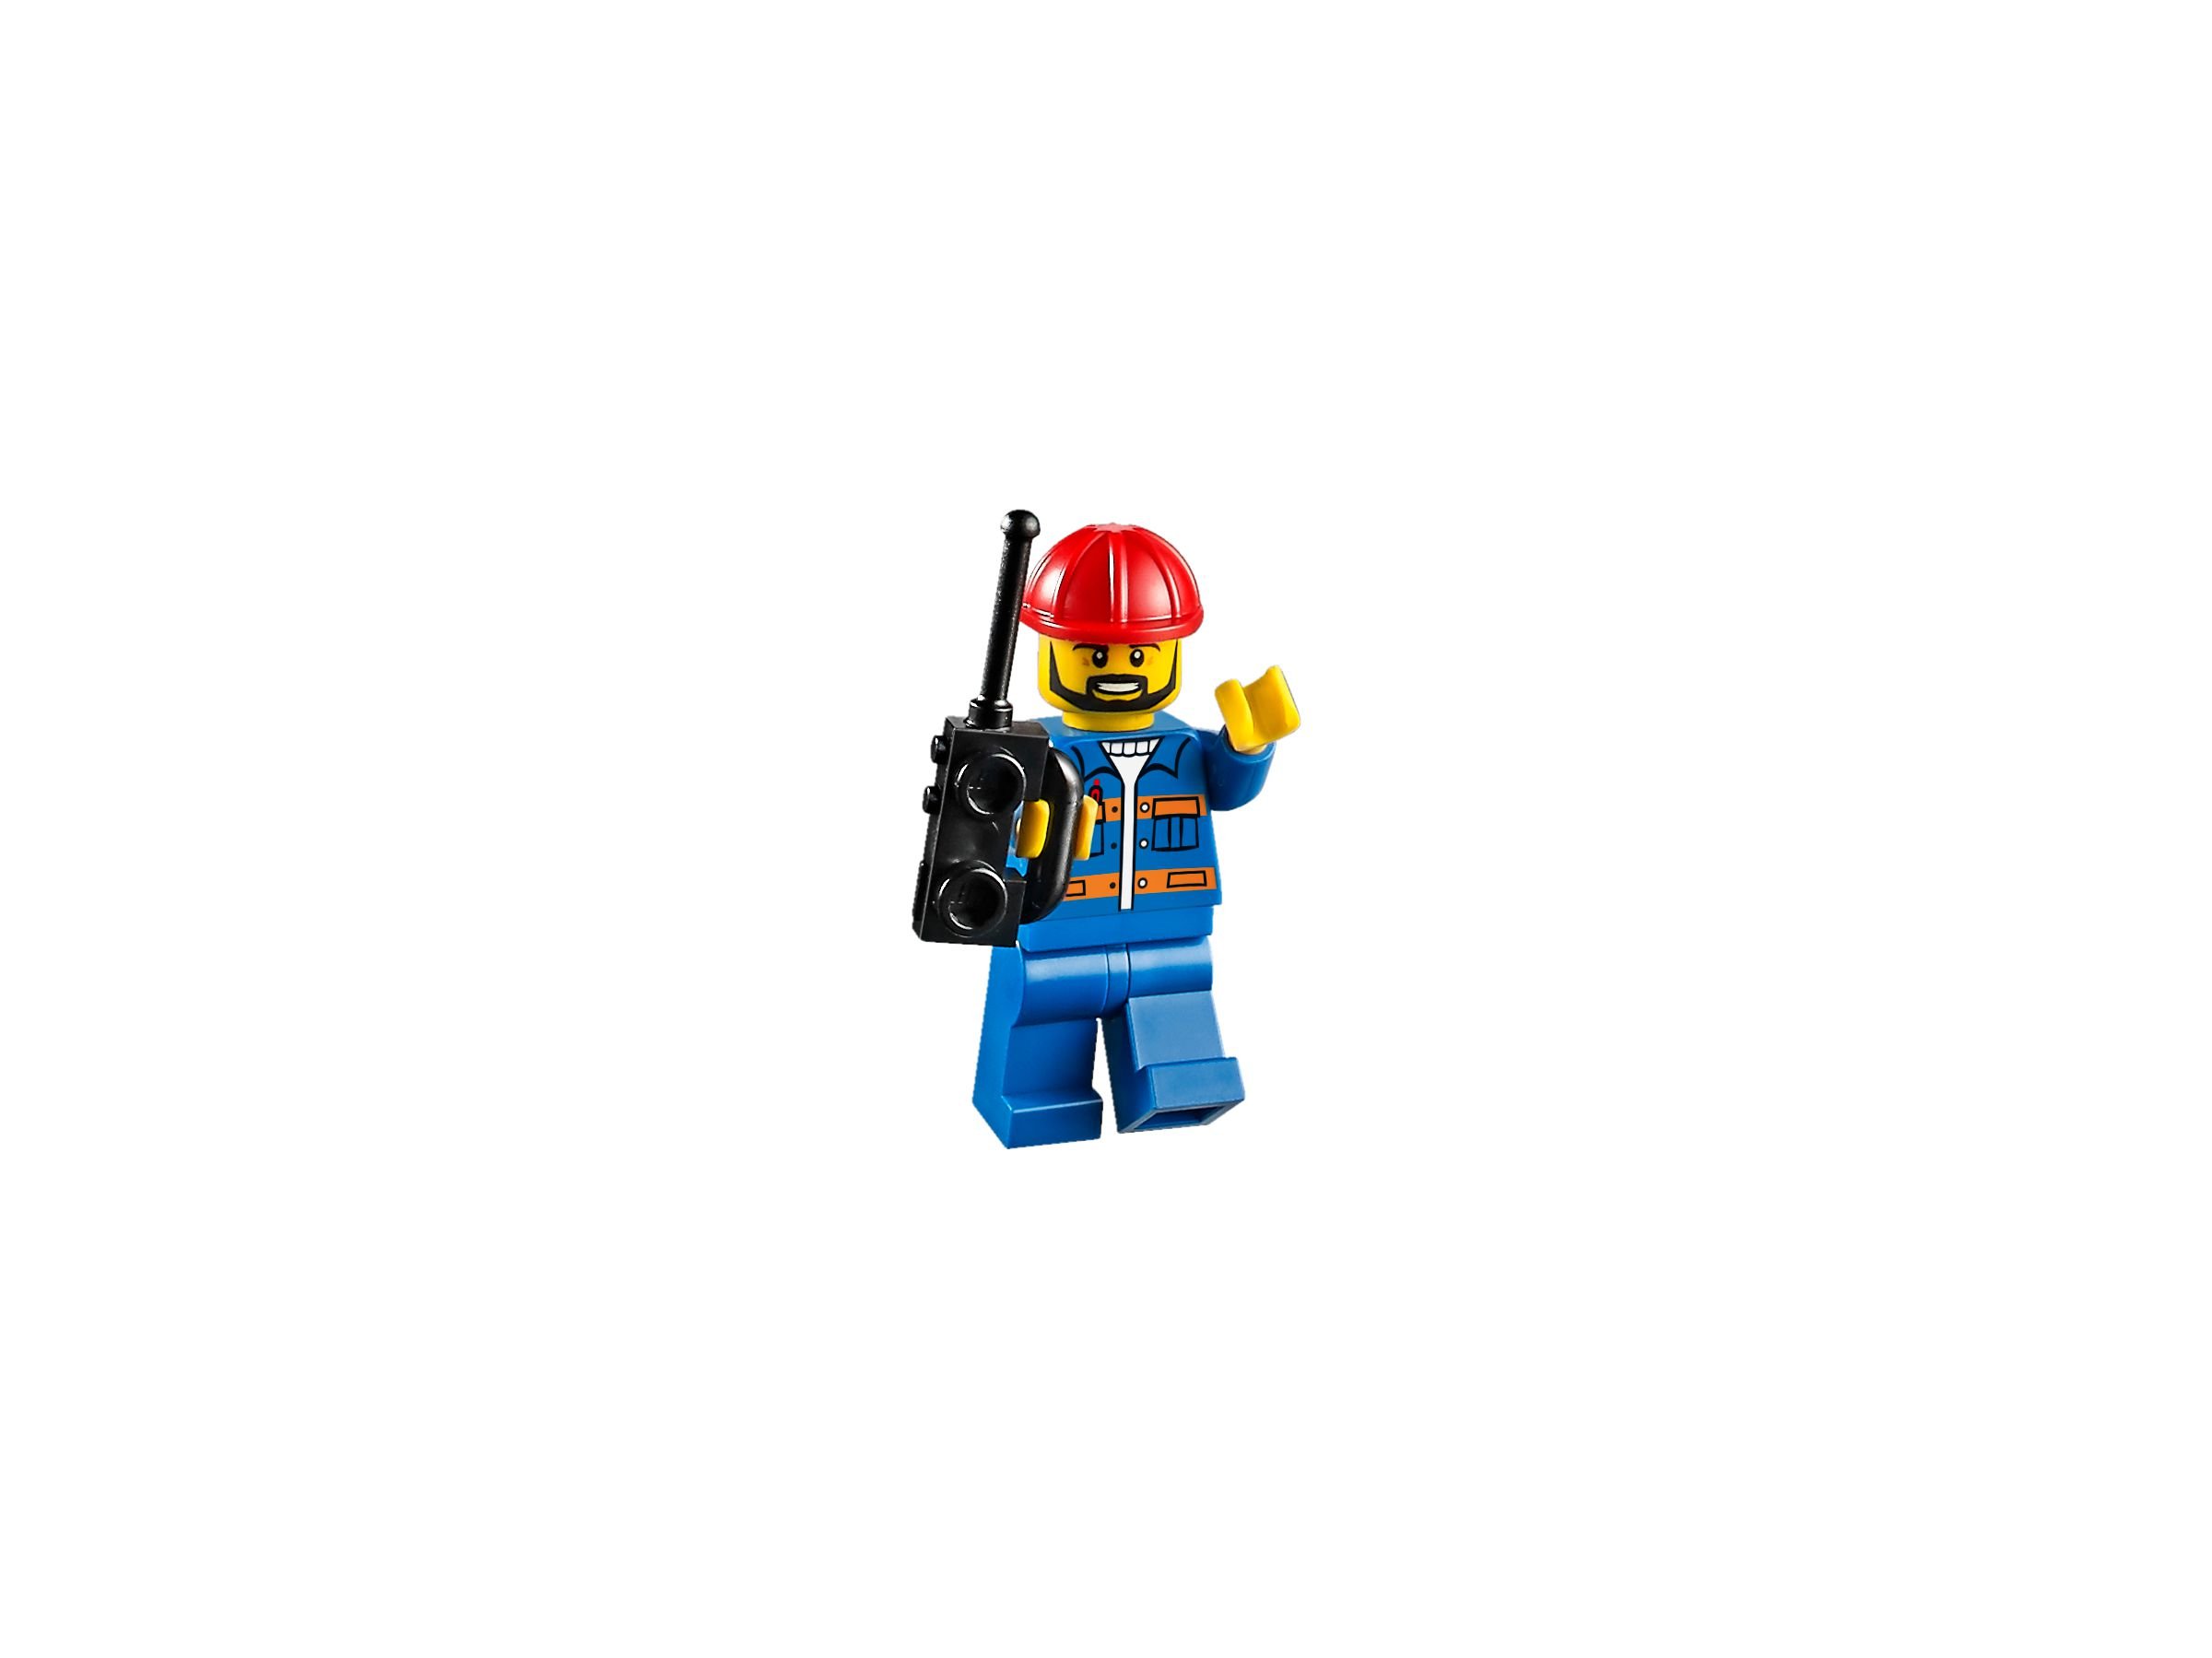 LEGO Juniors 10734 Große Baustelle LEGO_10734_alt9.jpg